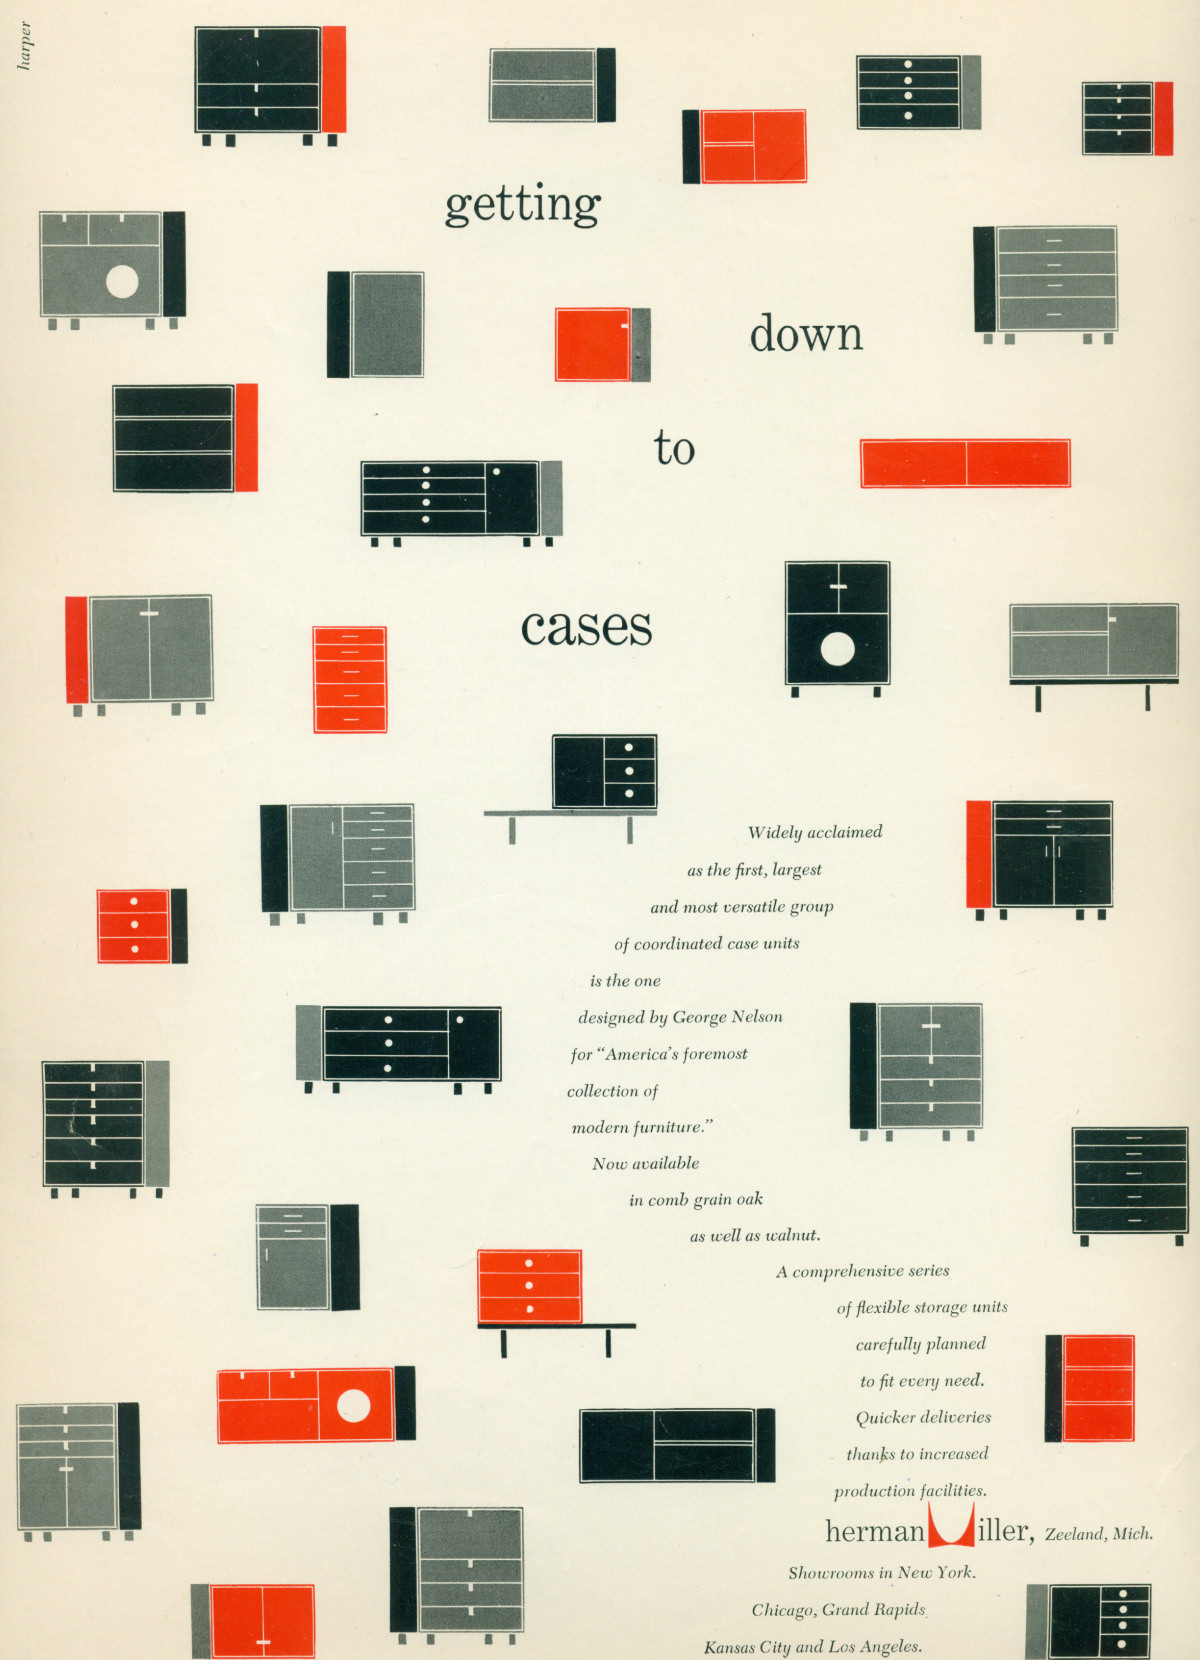 Representações gráficas em vermelho, preto e cinza de diversas combinações da série Nelson Basic Cabinet em torno de um texto promocional que serpenteia pelo anúncio.